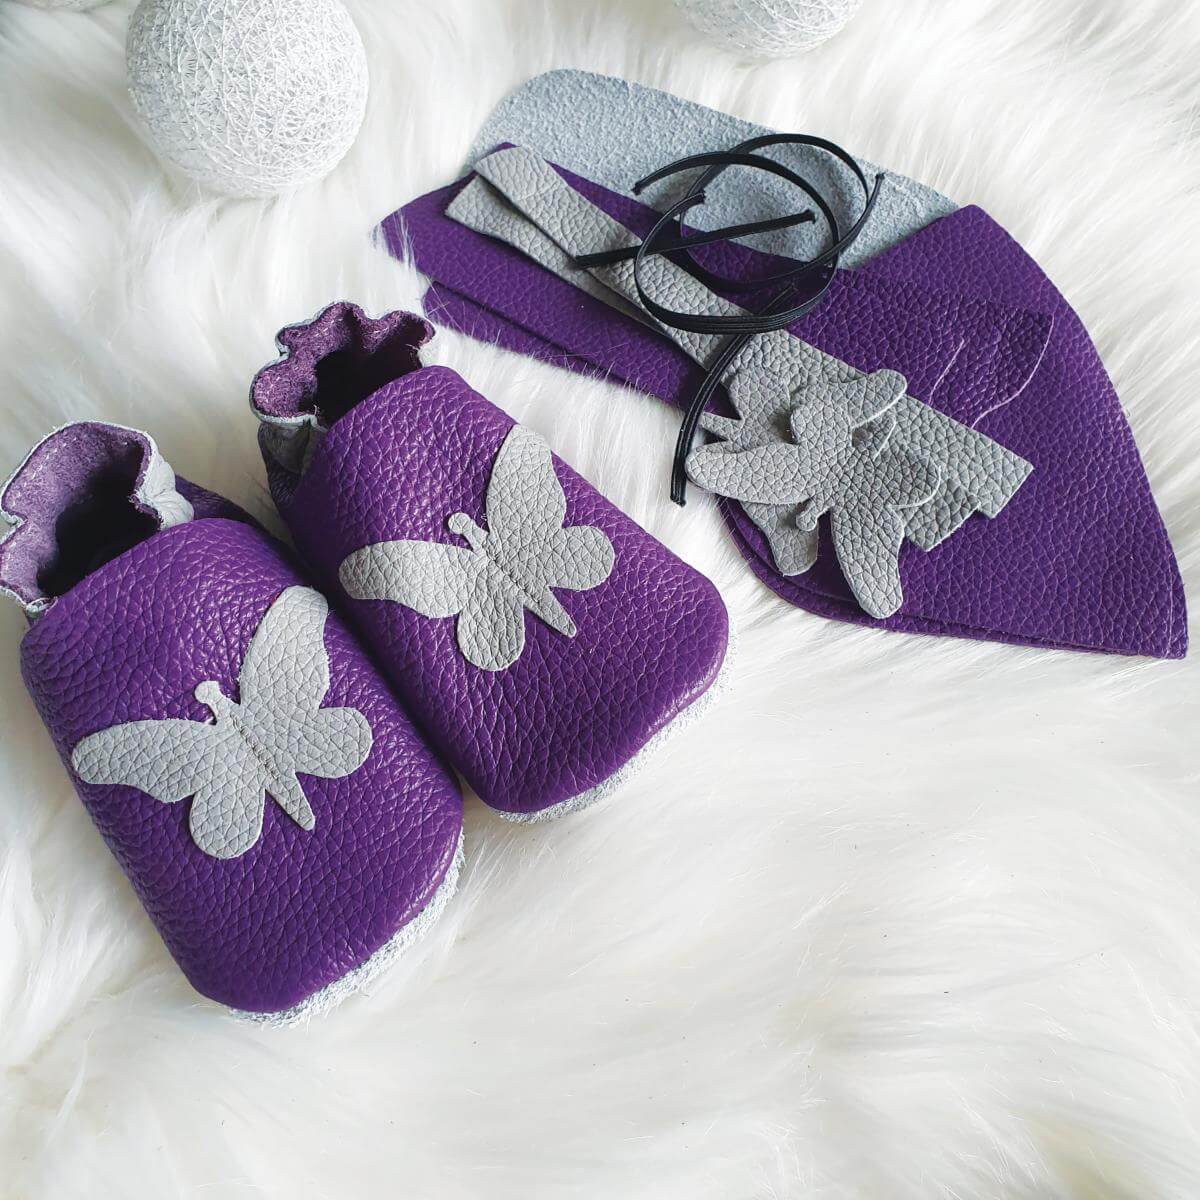 Kit chaussons en cuir pour bébé - Violet / Gris souris / Papillon